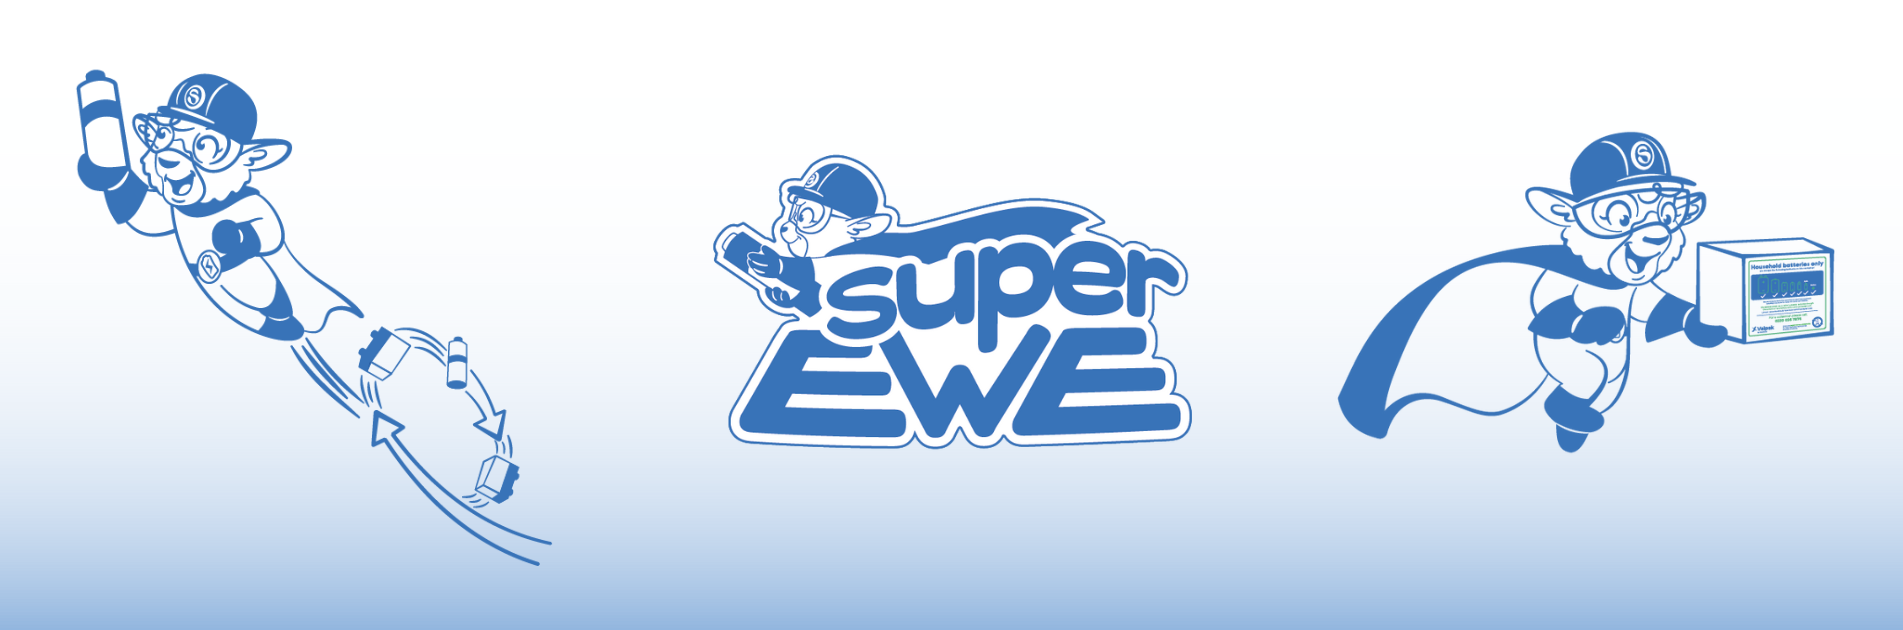 SuperEwe Website Footer